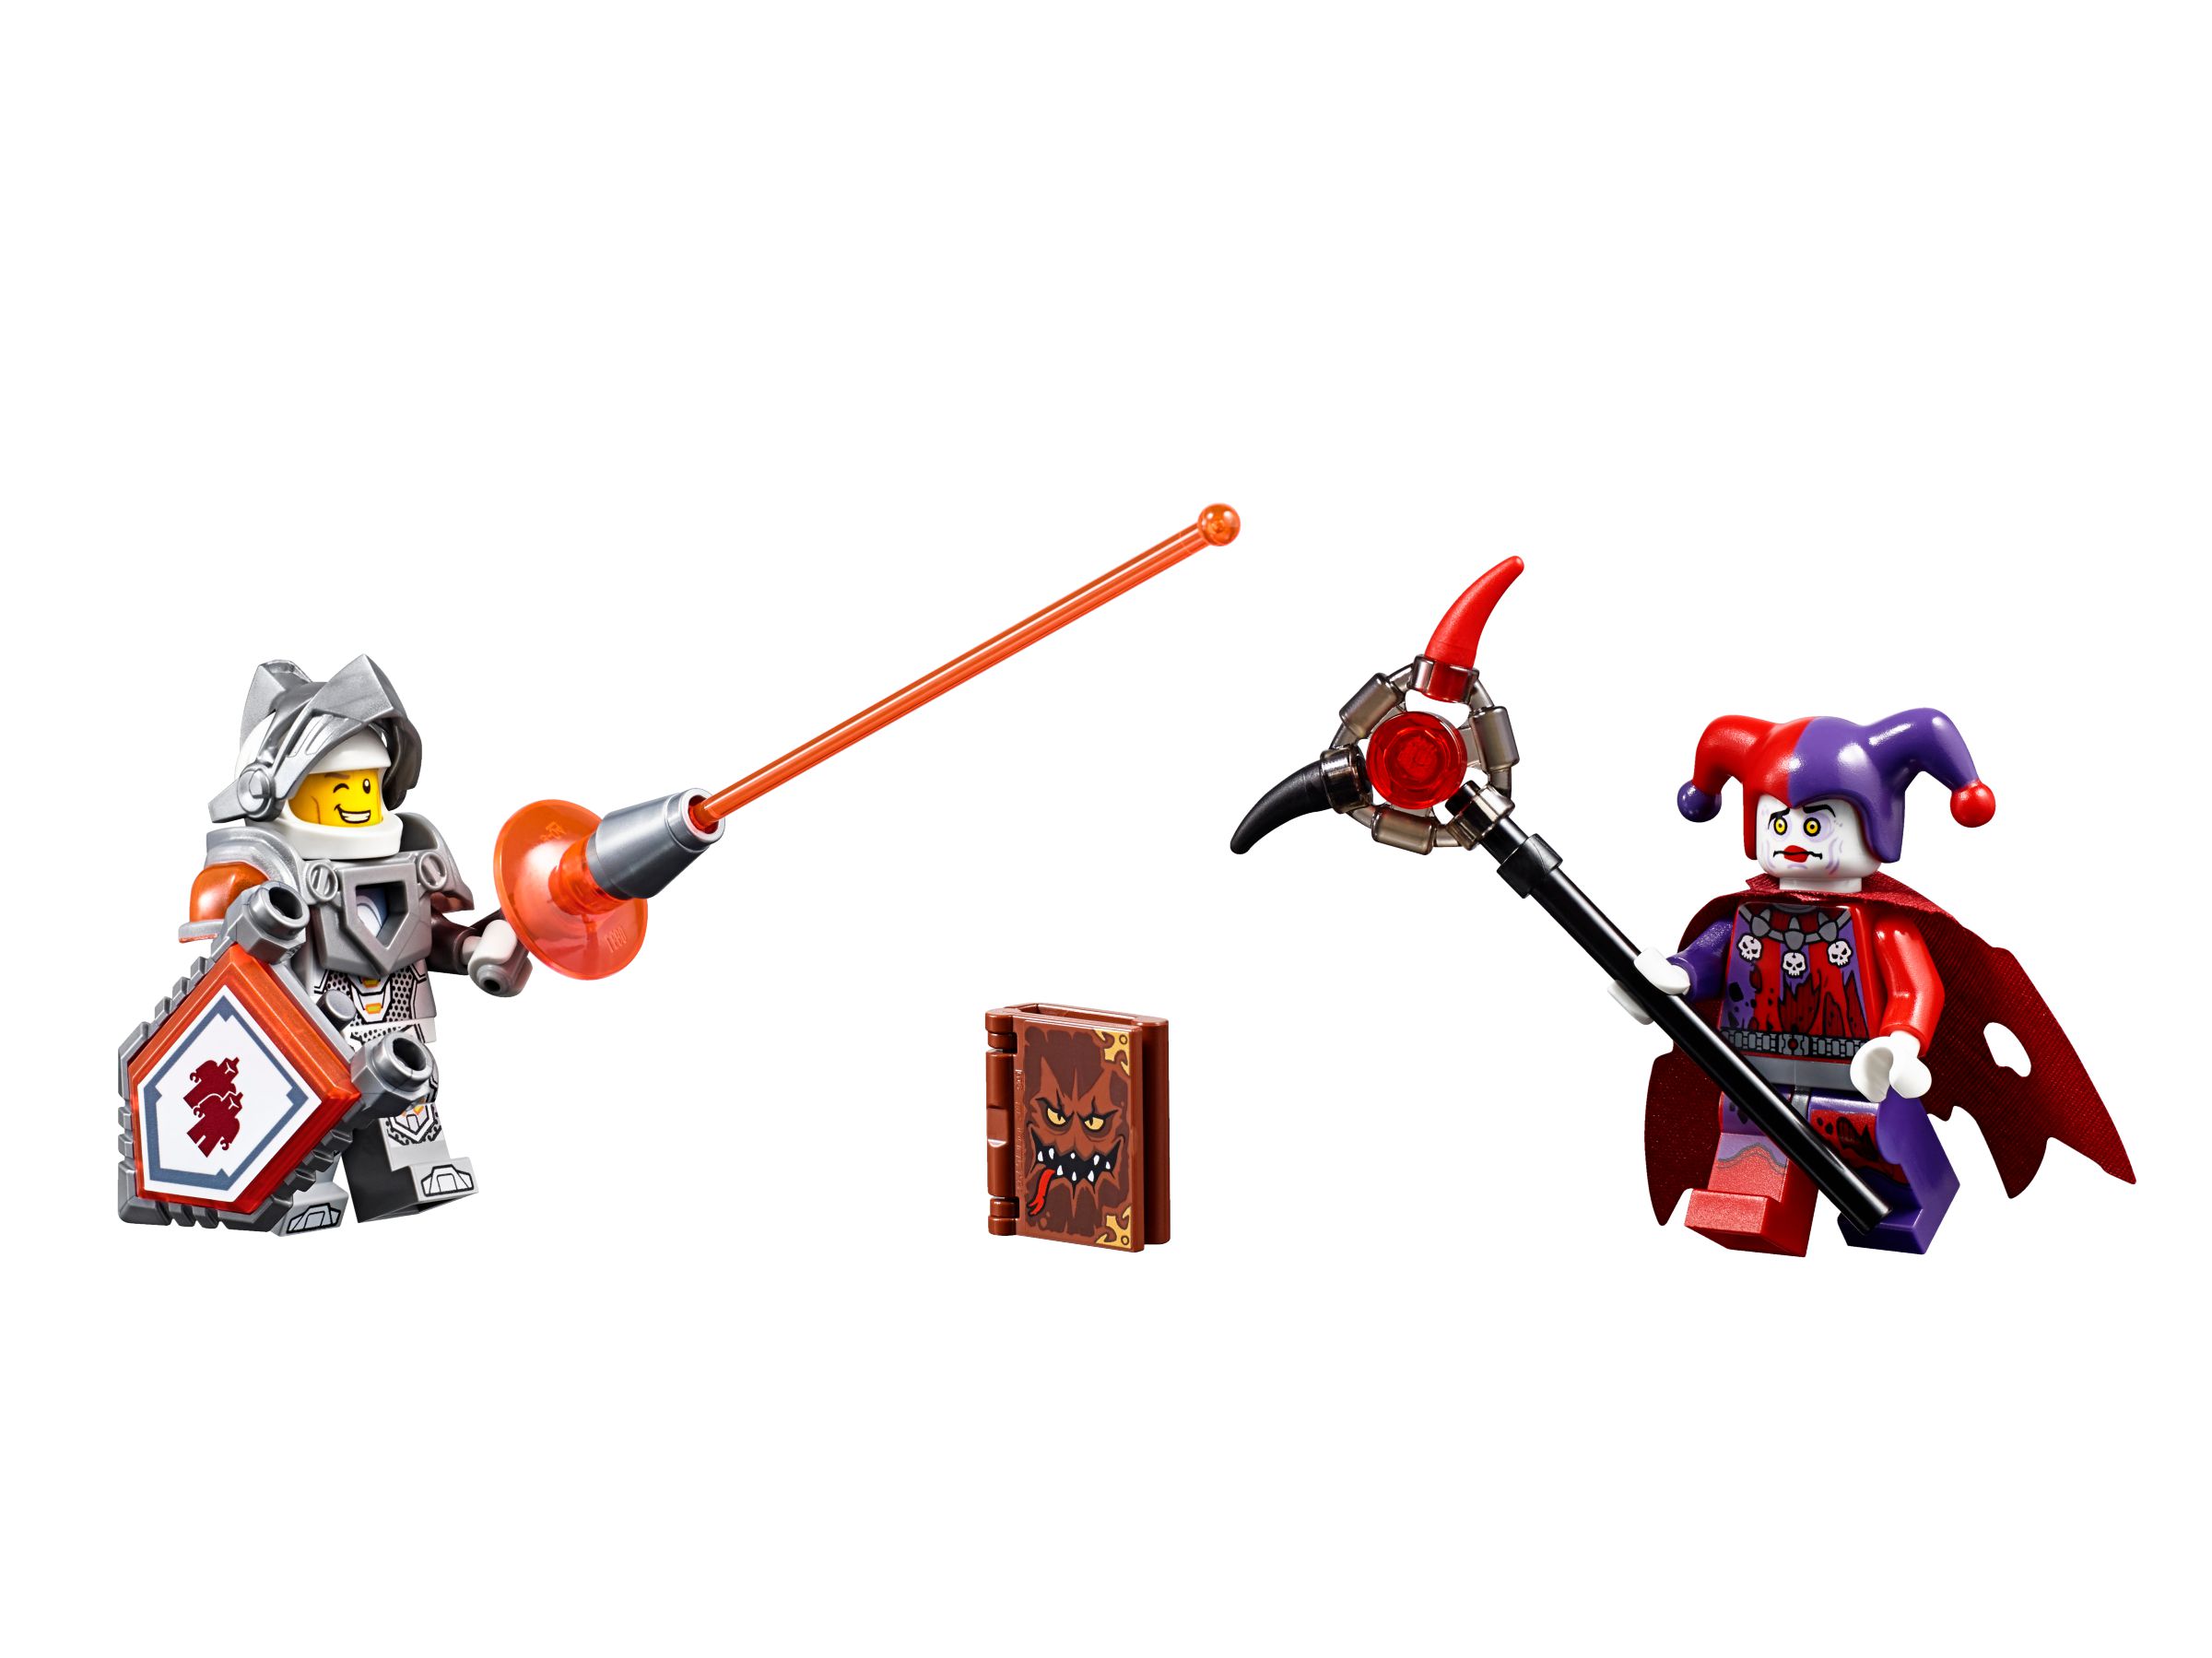 LEGO Nexo Knights 70316 Jestros Gefährt der Finsternis LEGO_70316_alt6.jpg